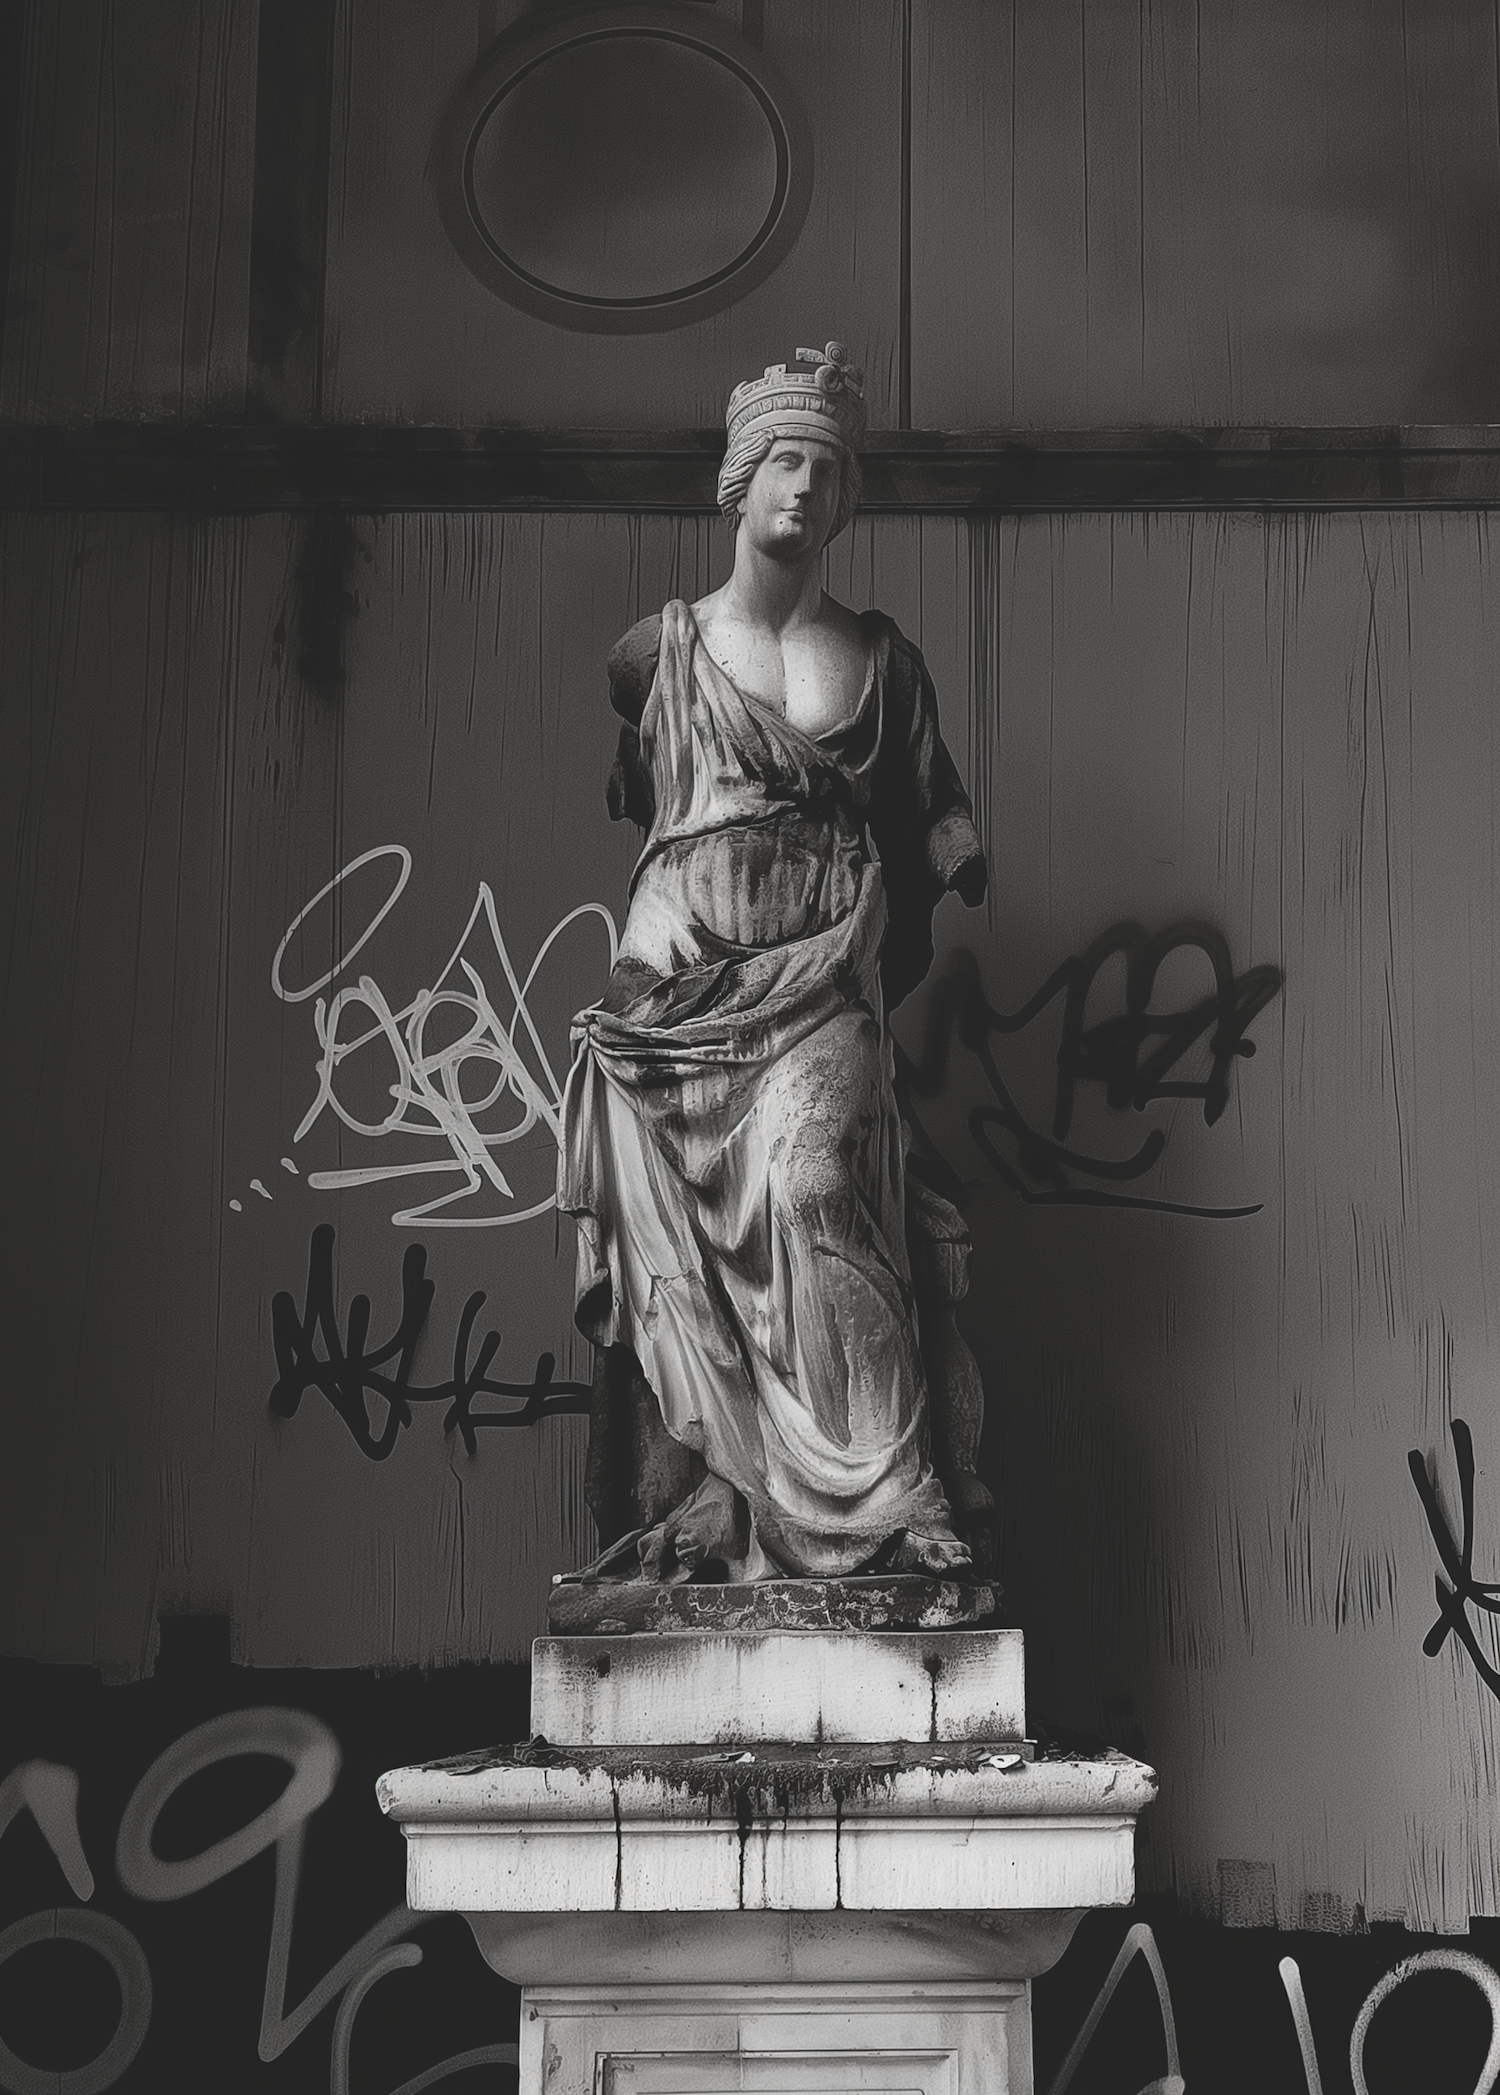 Statue and Graffiti Contrast